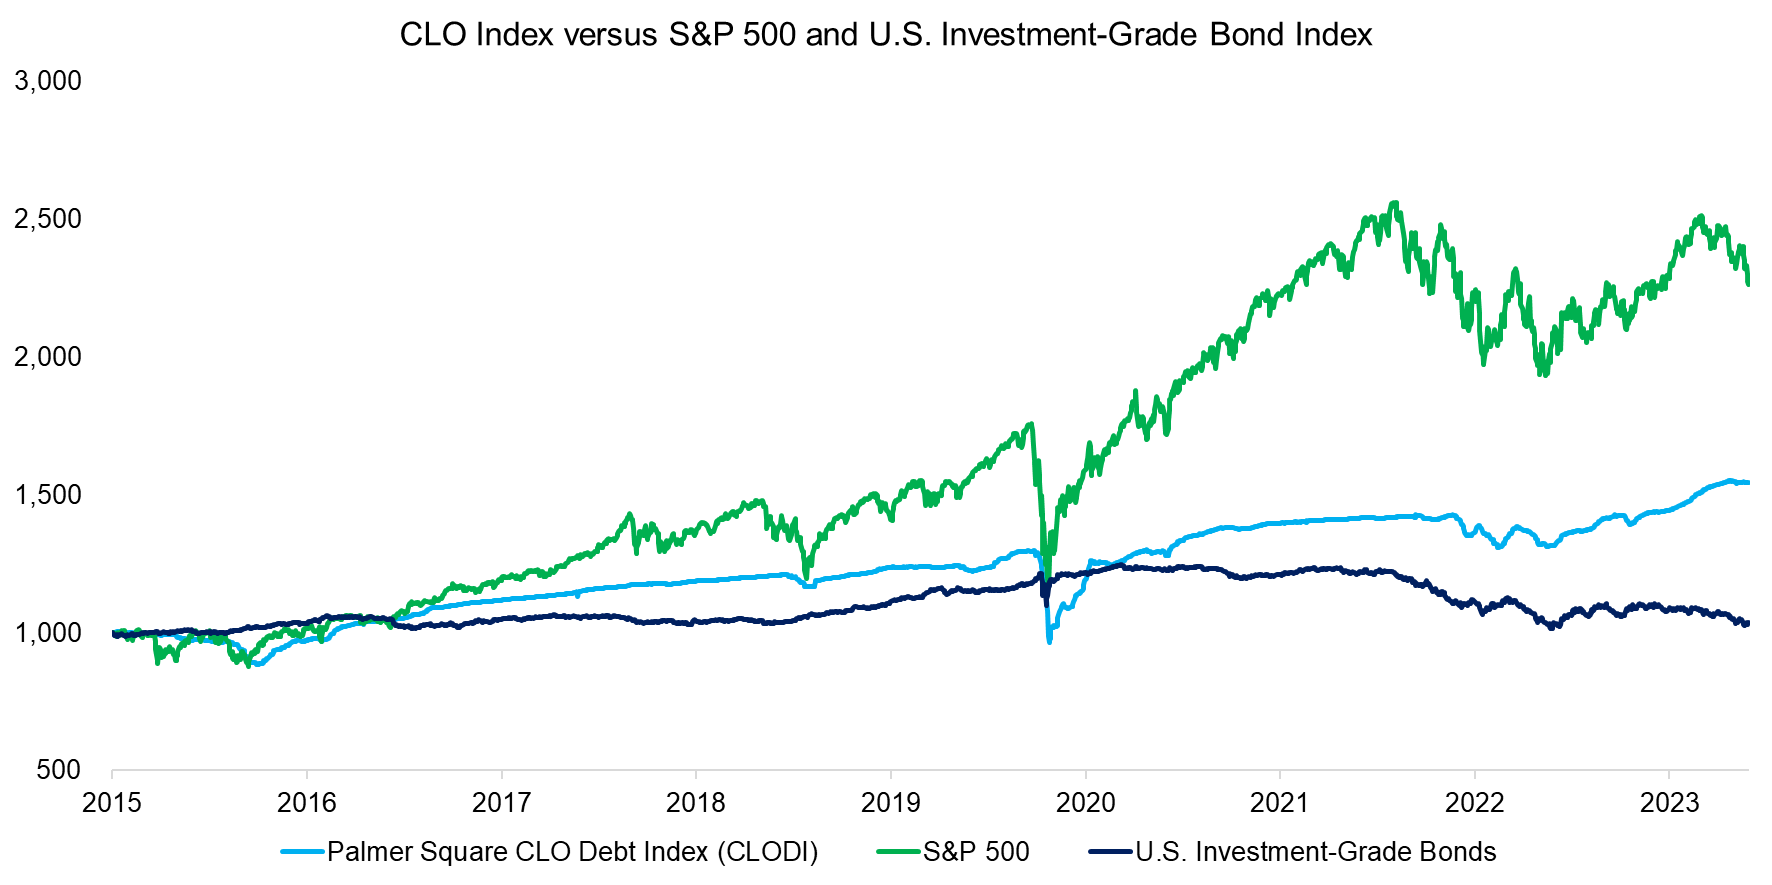 CLO Index versus S&P 500 and U.S. Investment-Grade Bond Index